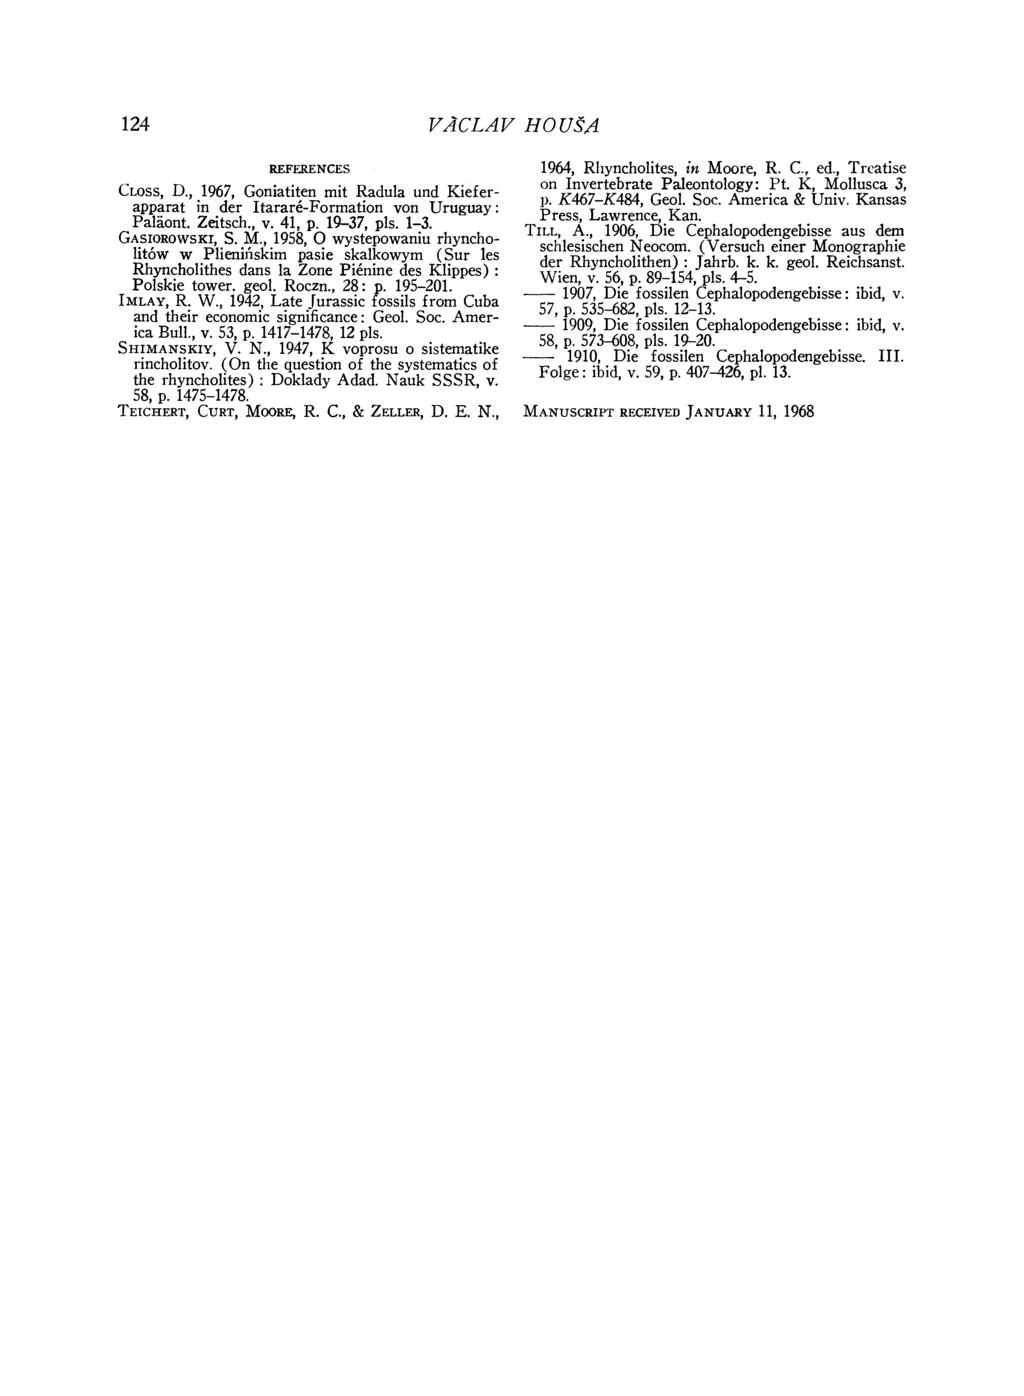 124 VACLAV HO US A REFERENCES CLoss, D., 1967, Goniatiten mit Radula und Kieferapparat in der Itarare-Formation von Uruguay: Paliont. Zeitsch., v. 41, p. 19-37, pls. 1-3. GASIOROWSKI, S. M.